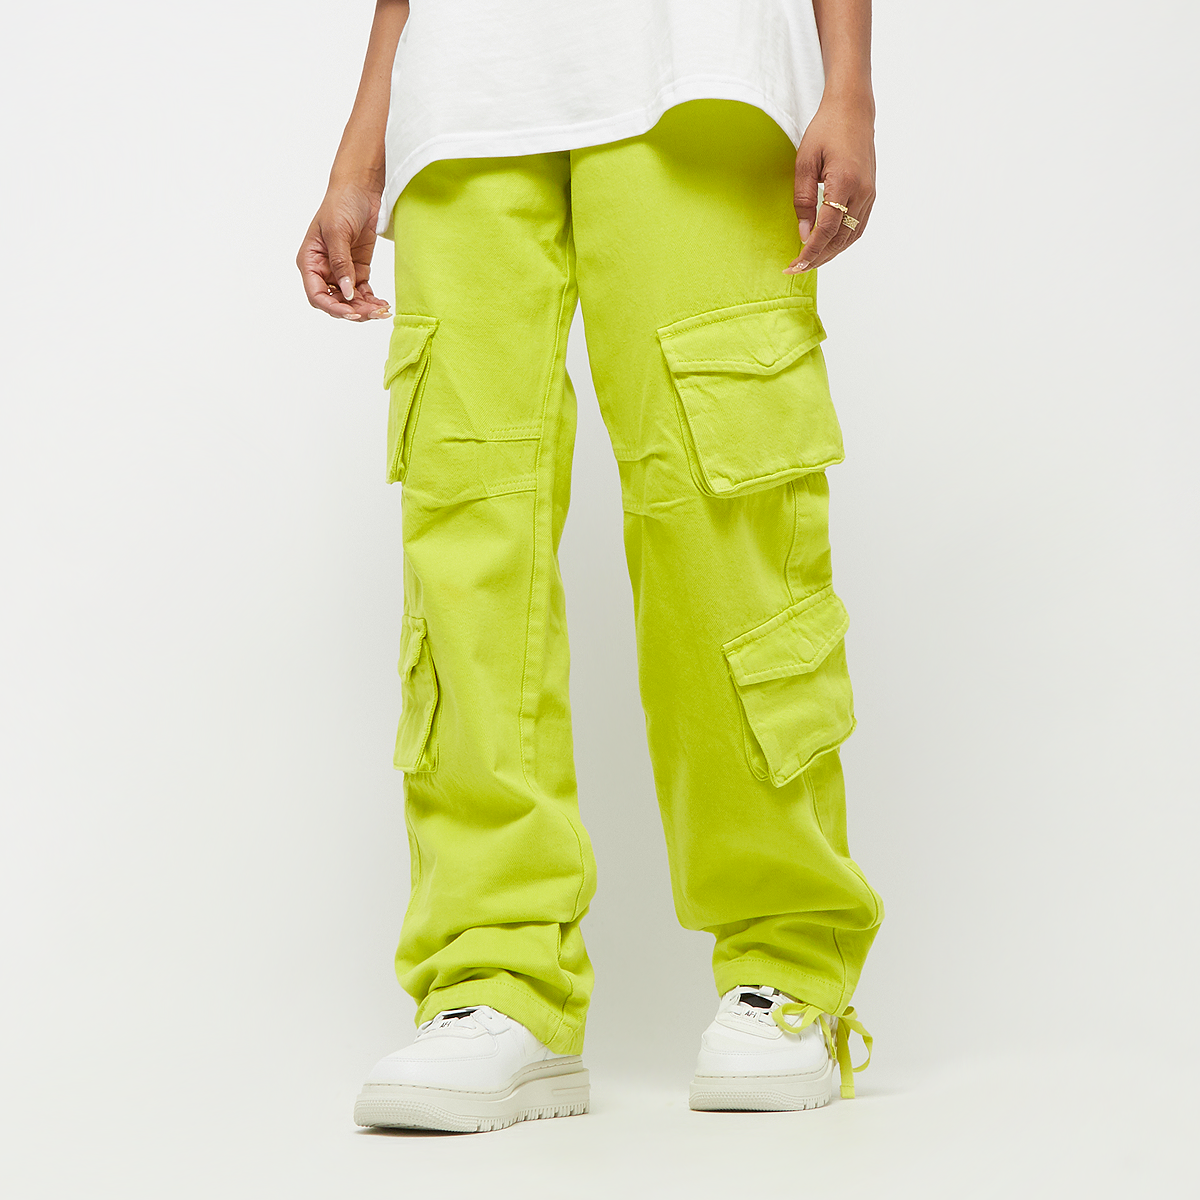 Pegador Maloy Cargo Wide Jeans Spijkerbroeken Dames washed lime yellow maat: 25 beschikbare maaten:25 26 27 28 29 30